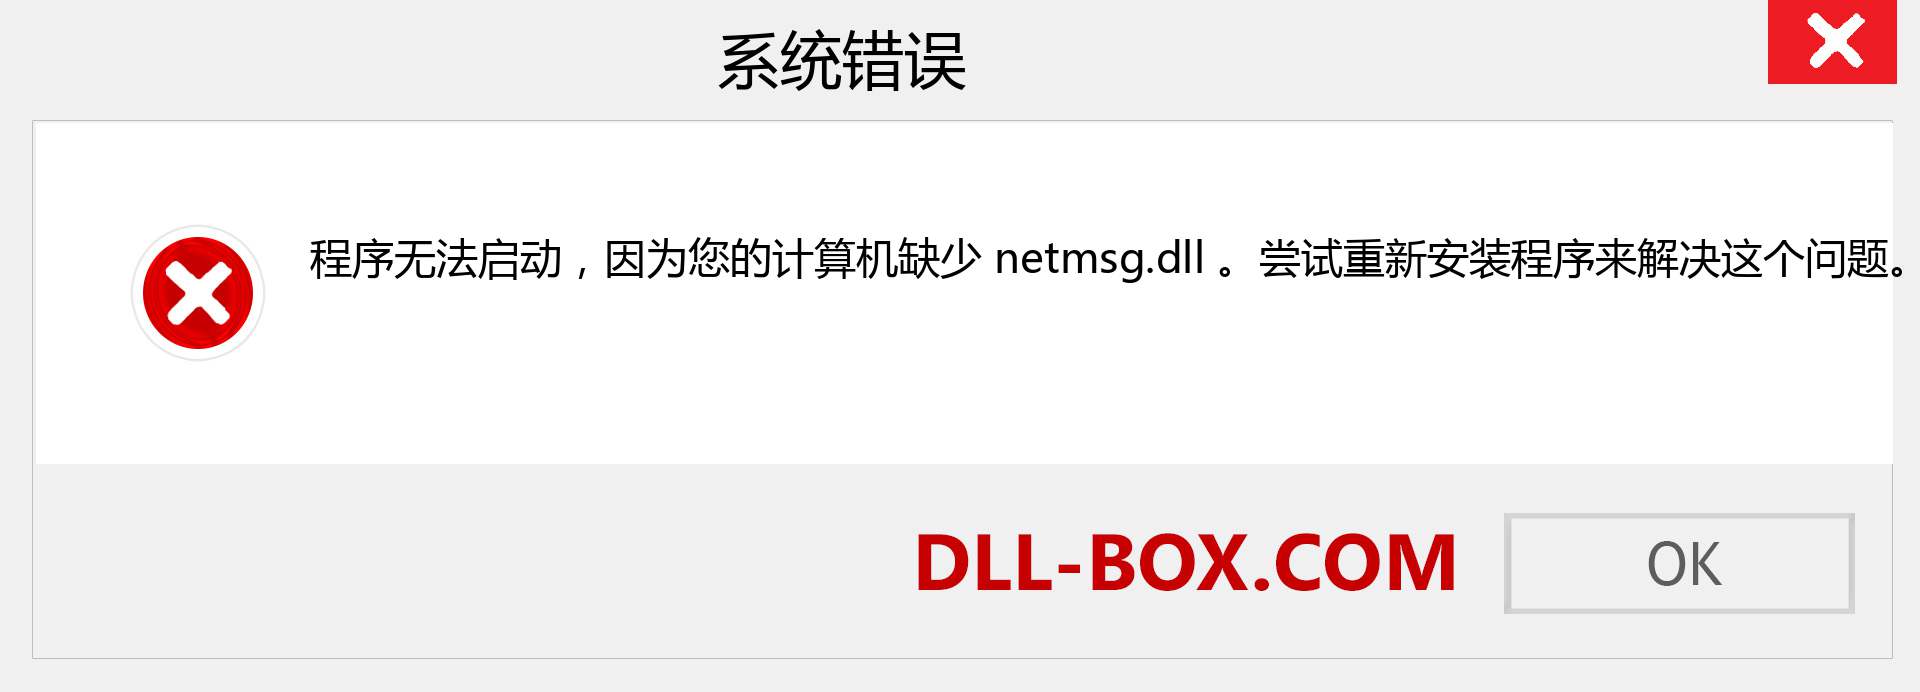 netmsg.dll 文件丢失？。 适用于 Windows 7、8、10 的下载 - 修复 Windows、照片、图像上的 netmsg dll 丢失错误